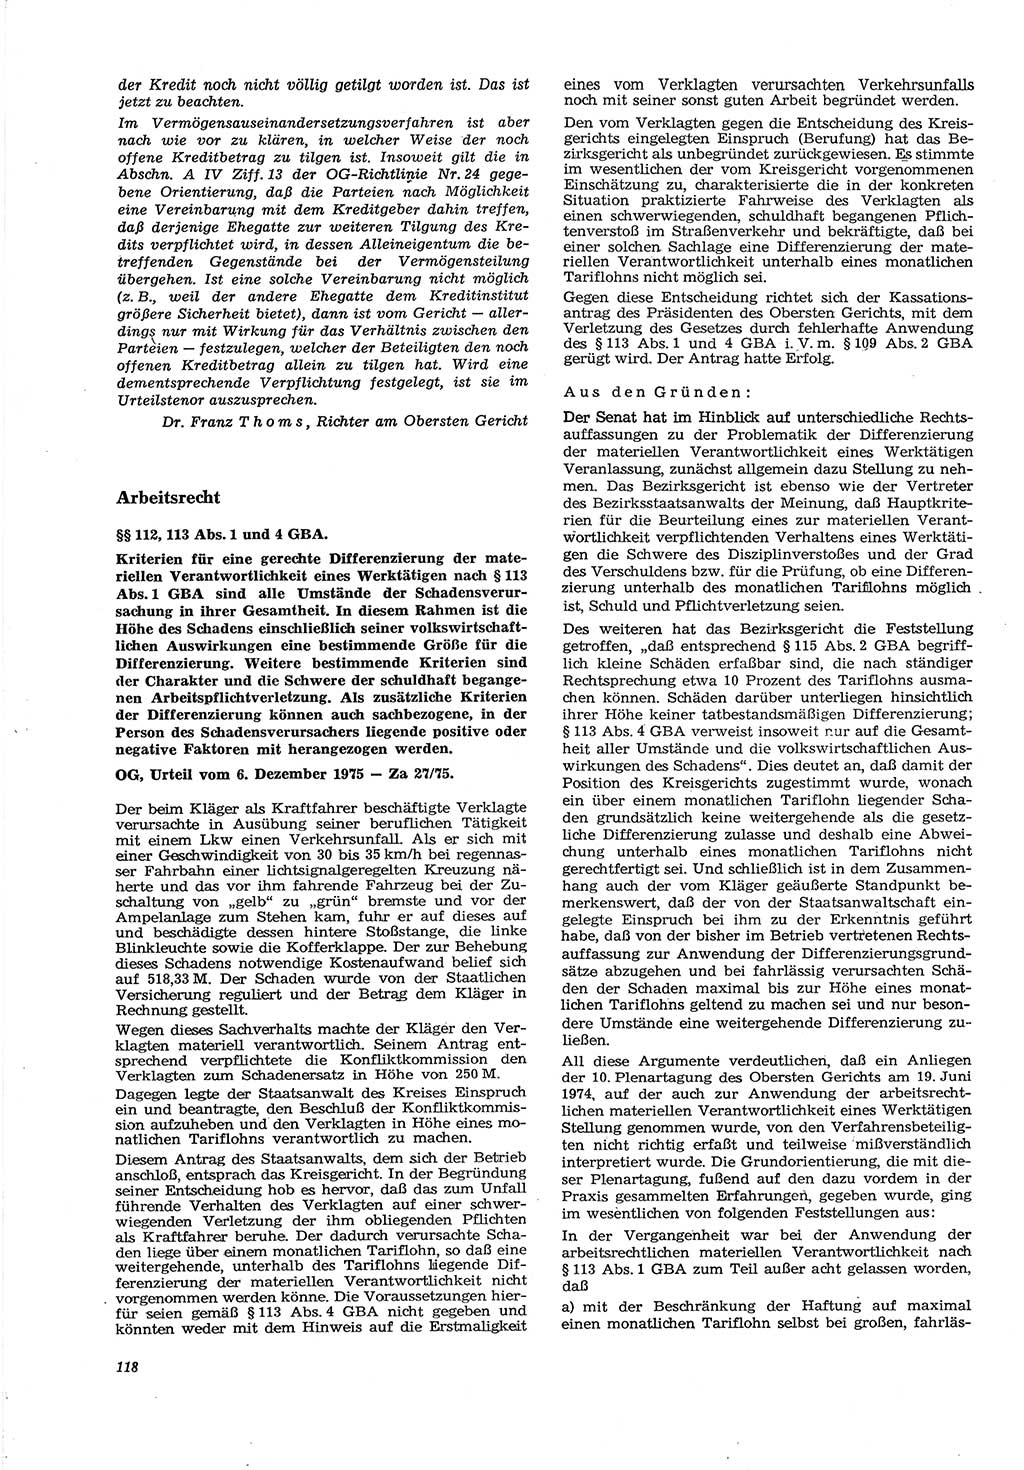 Neue Justiz (NJ), Zeitschrift für Recht und Rechtswissenschaft [Deutsche Demokratische Republik (DDR)], 30. Jahrgang 1976, Seite 118 (NJ DDR 1976, S. 118)